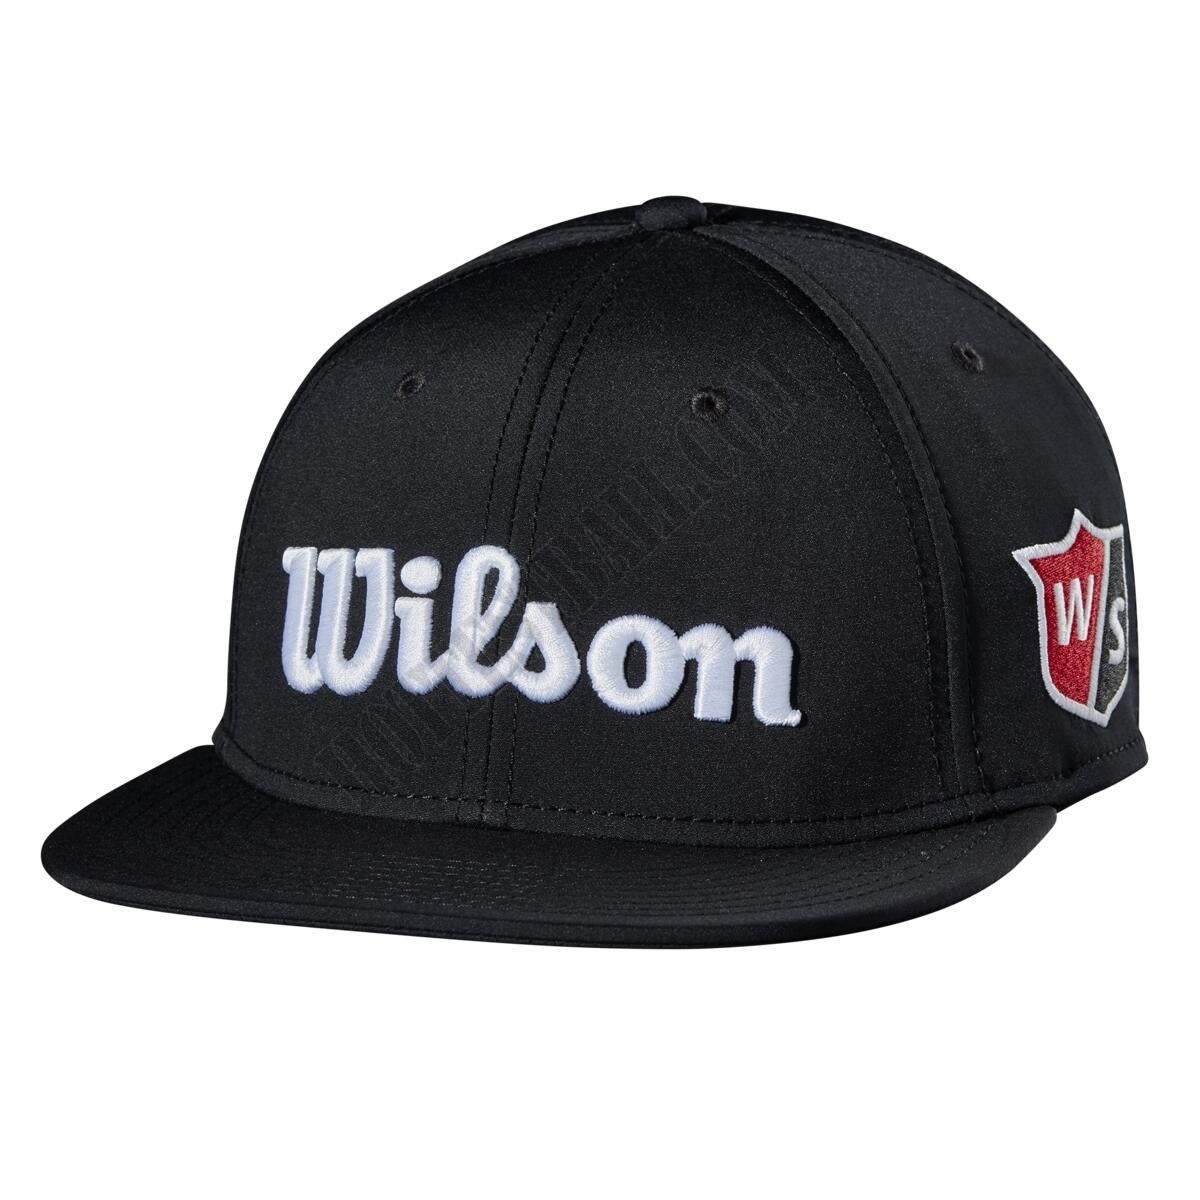 Wilson Tour Flat Brim Hat - Wilson Discount Store - Wilson Tour Flat Brim Hat - Wilson Discount Store